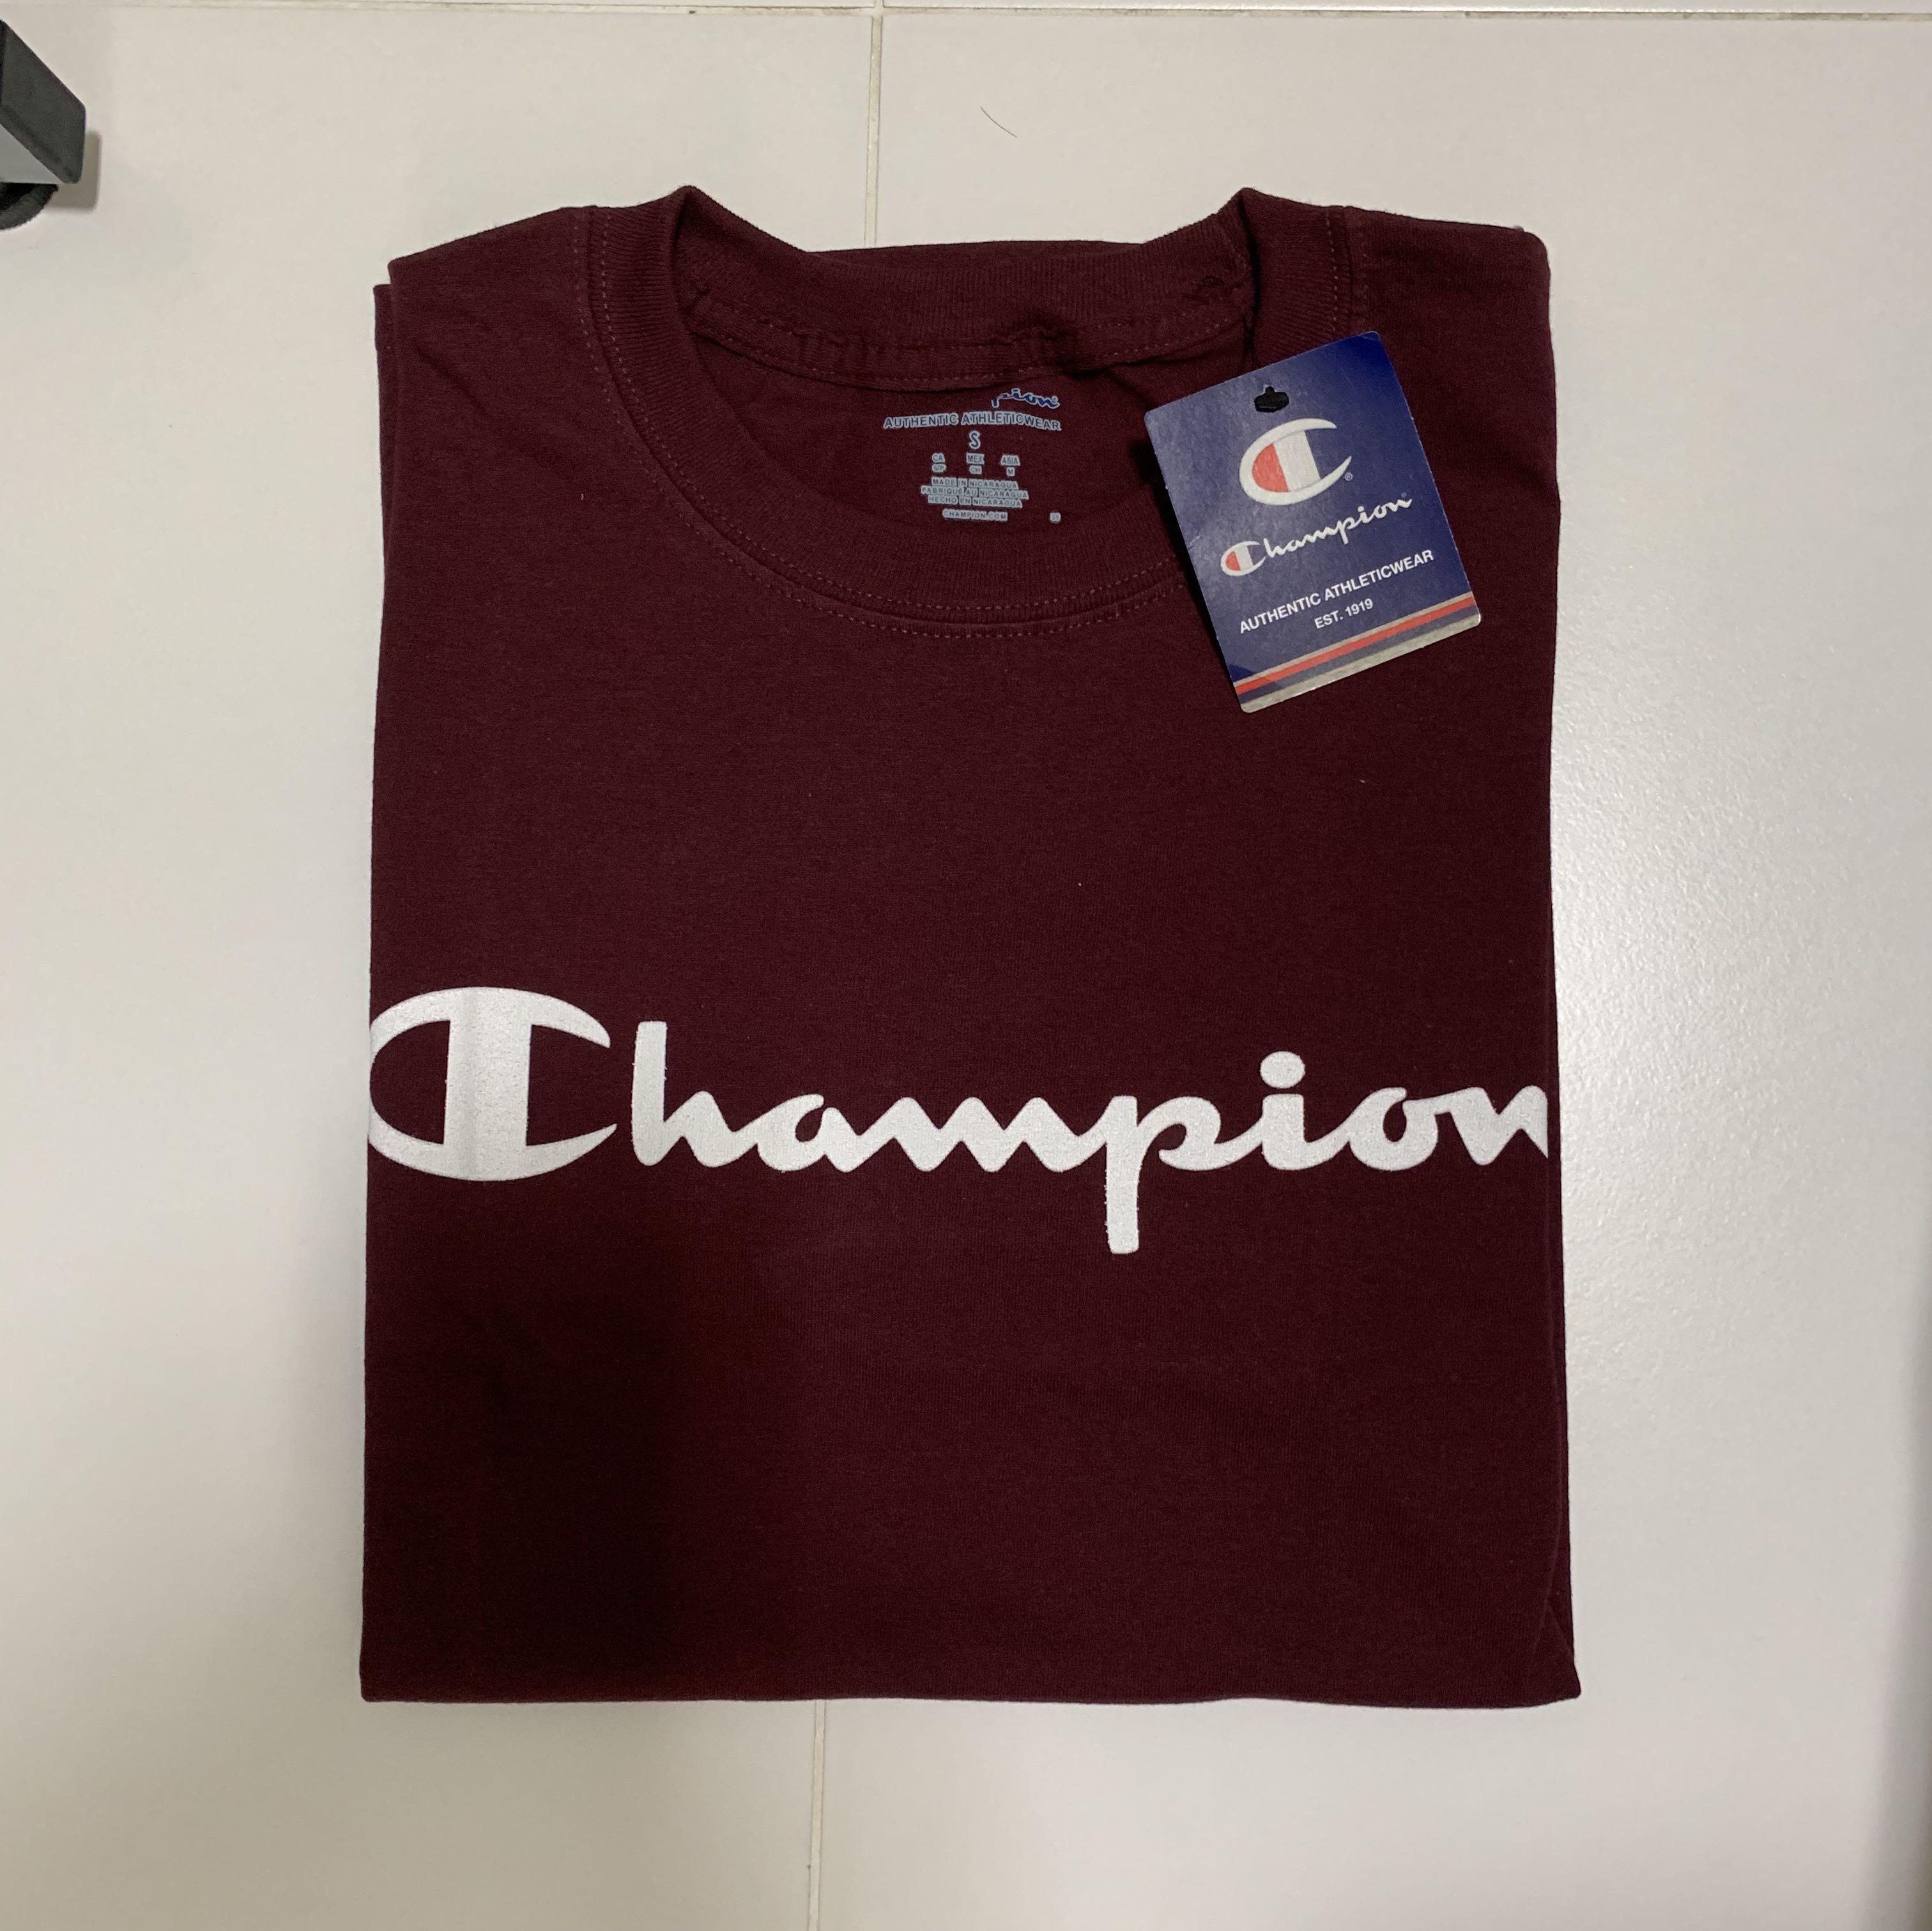 champion t shirt real vs fake